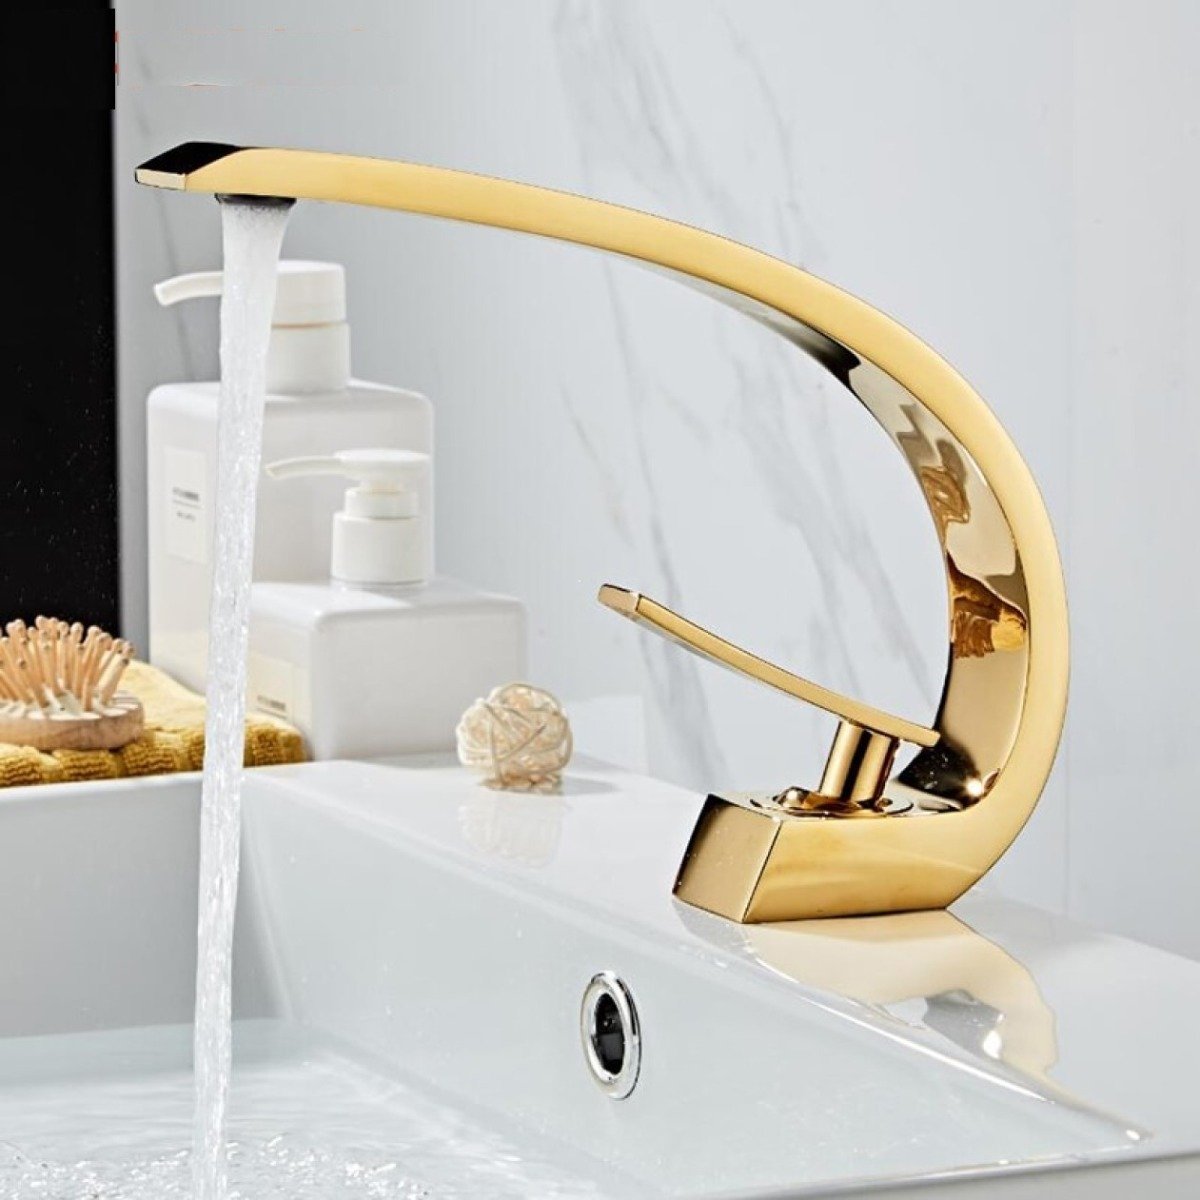 Torneira Moderna Banheiro Monocomando Dourada Elegante